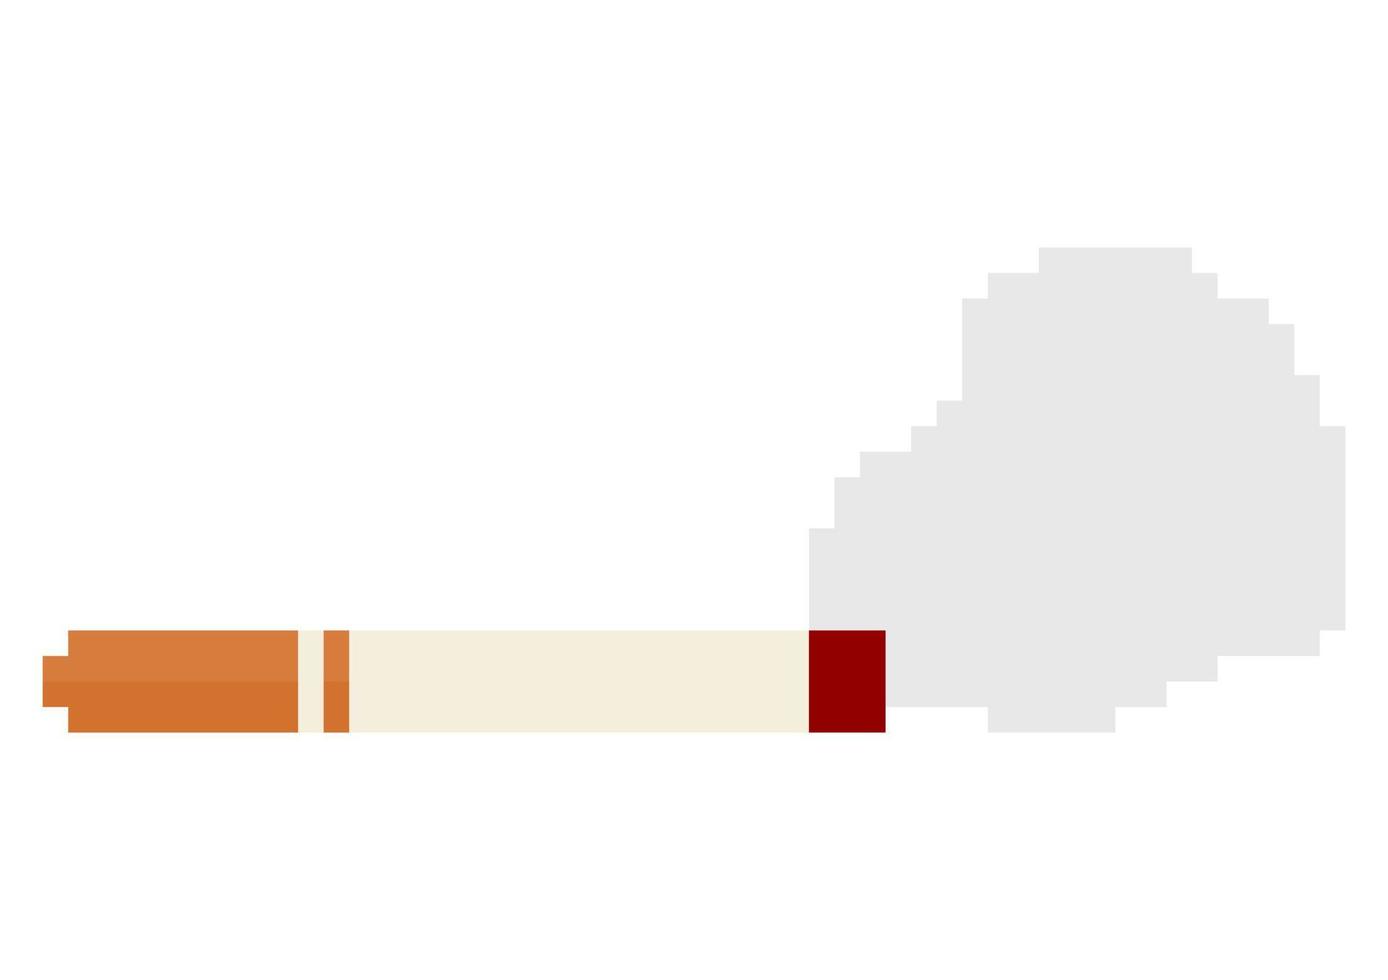 ilustración de cigarrillos y humo en estilo píxel vector